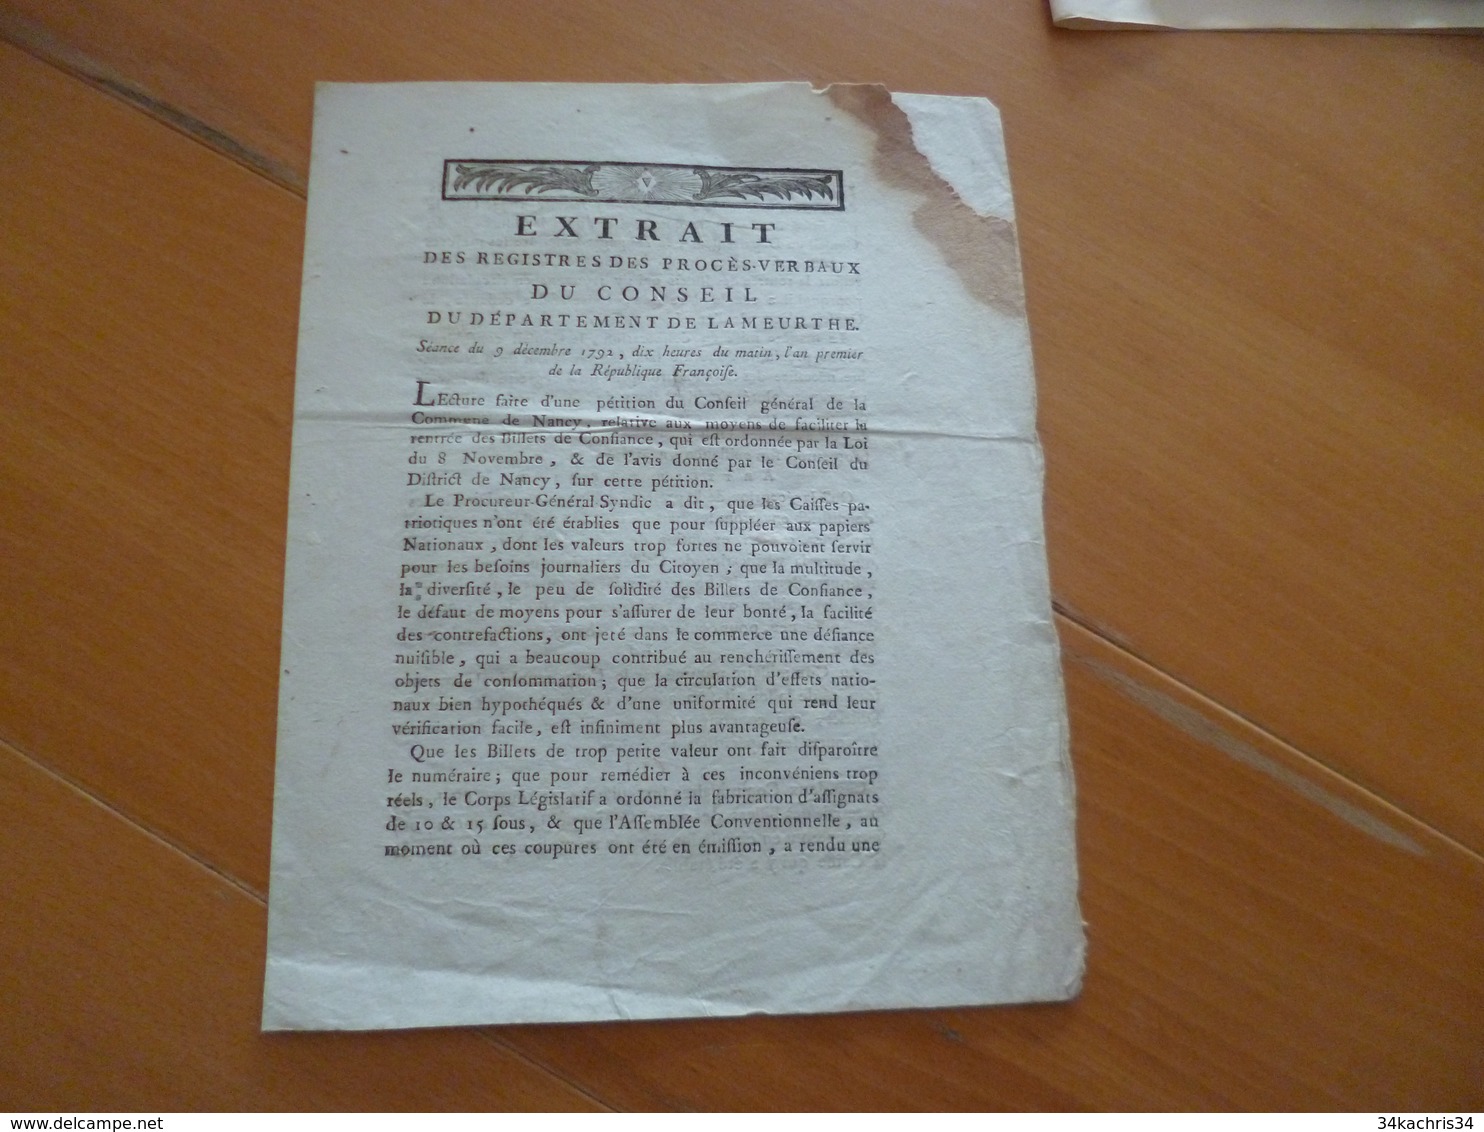 Extrait Procès Verbaux Département De La Meurthr 09/12/1792 Monnaies Billets De Confiance Manque En L'état - Gesetze & Erlasse